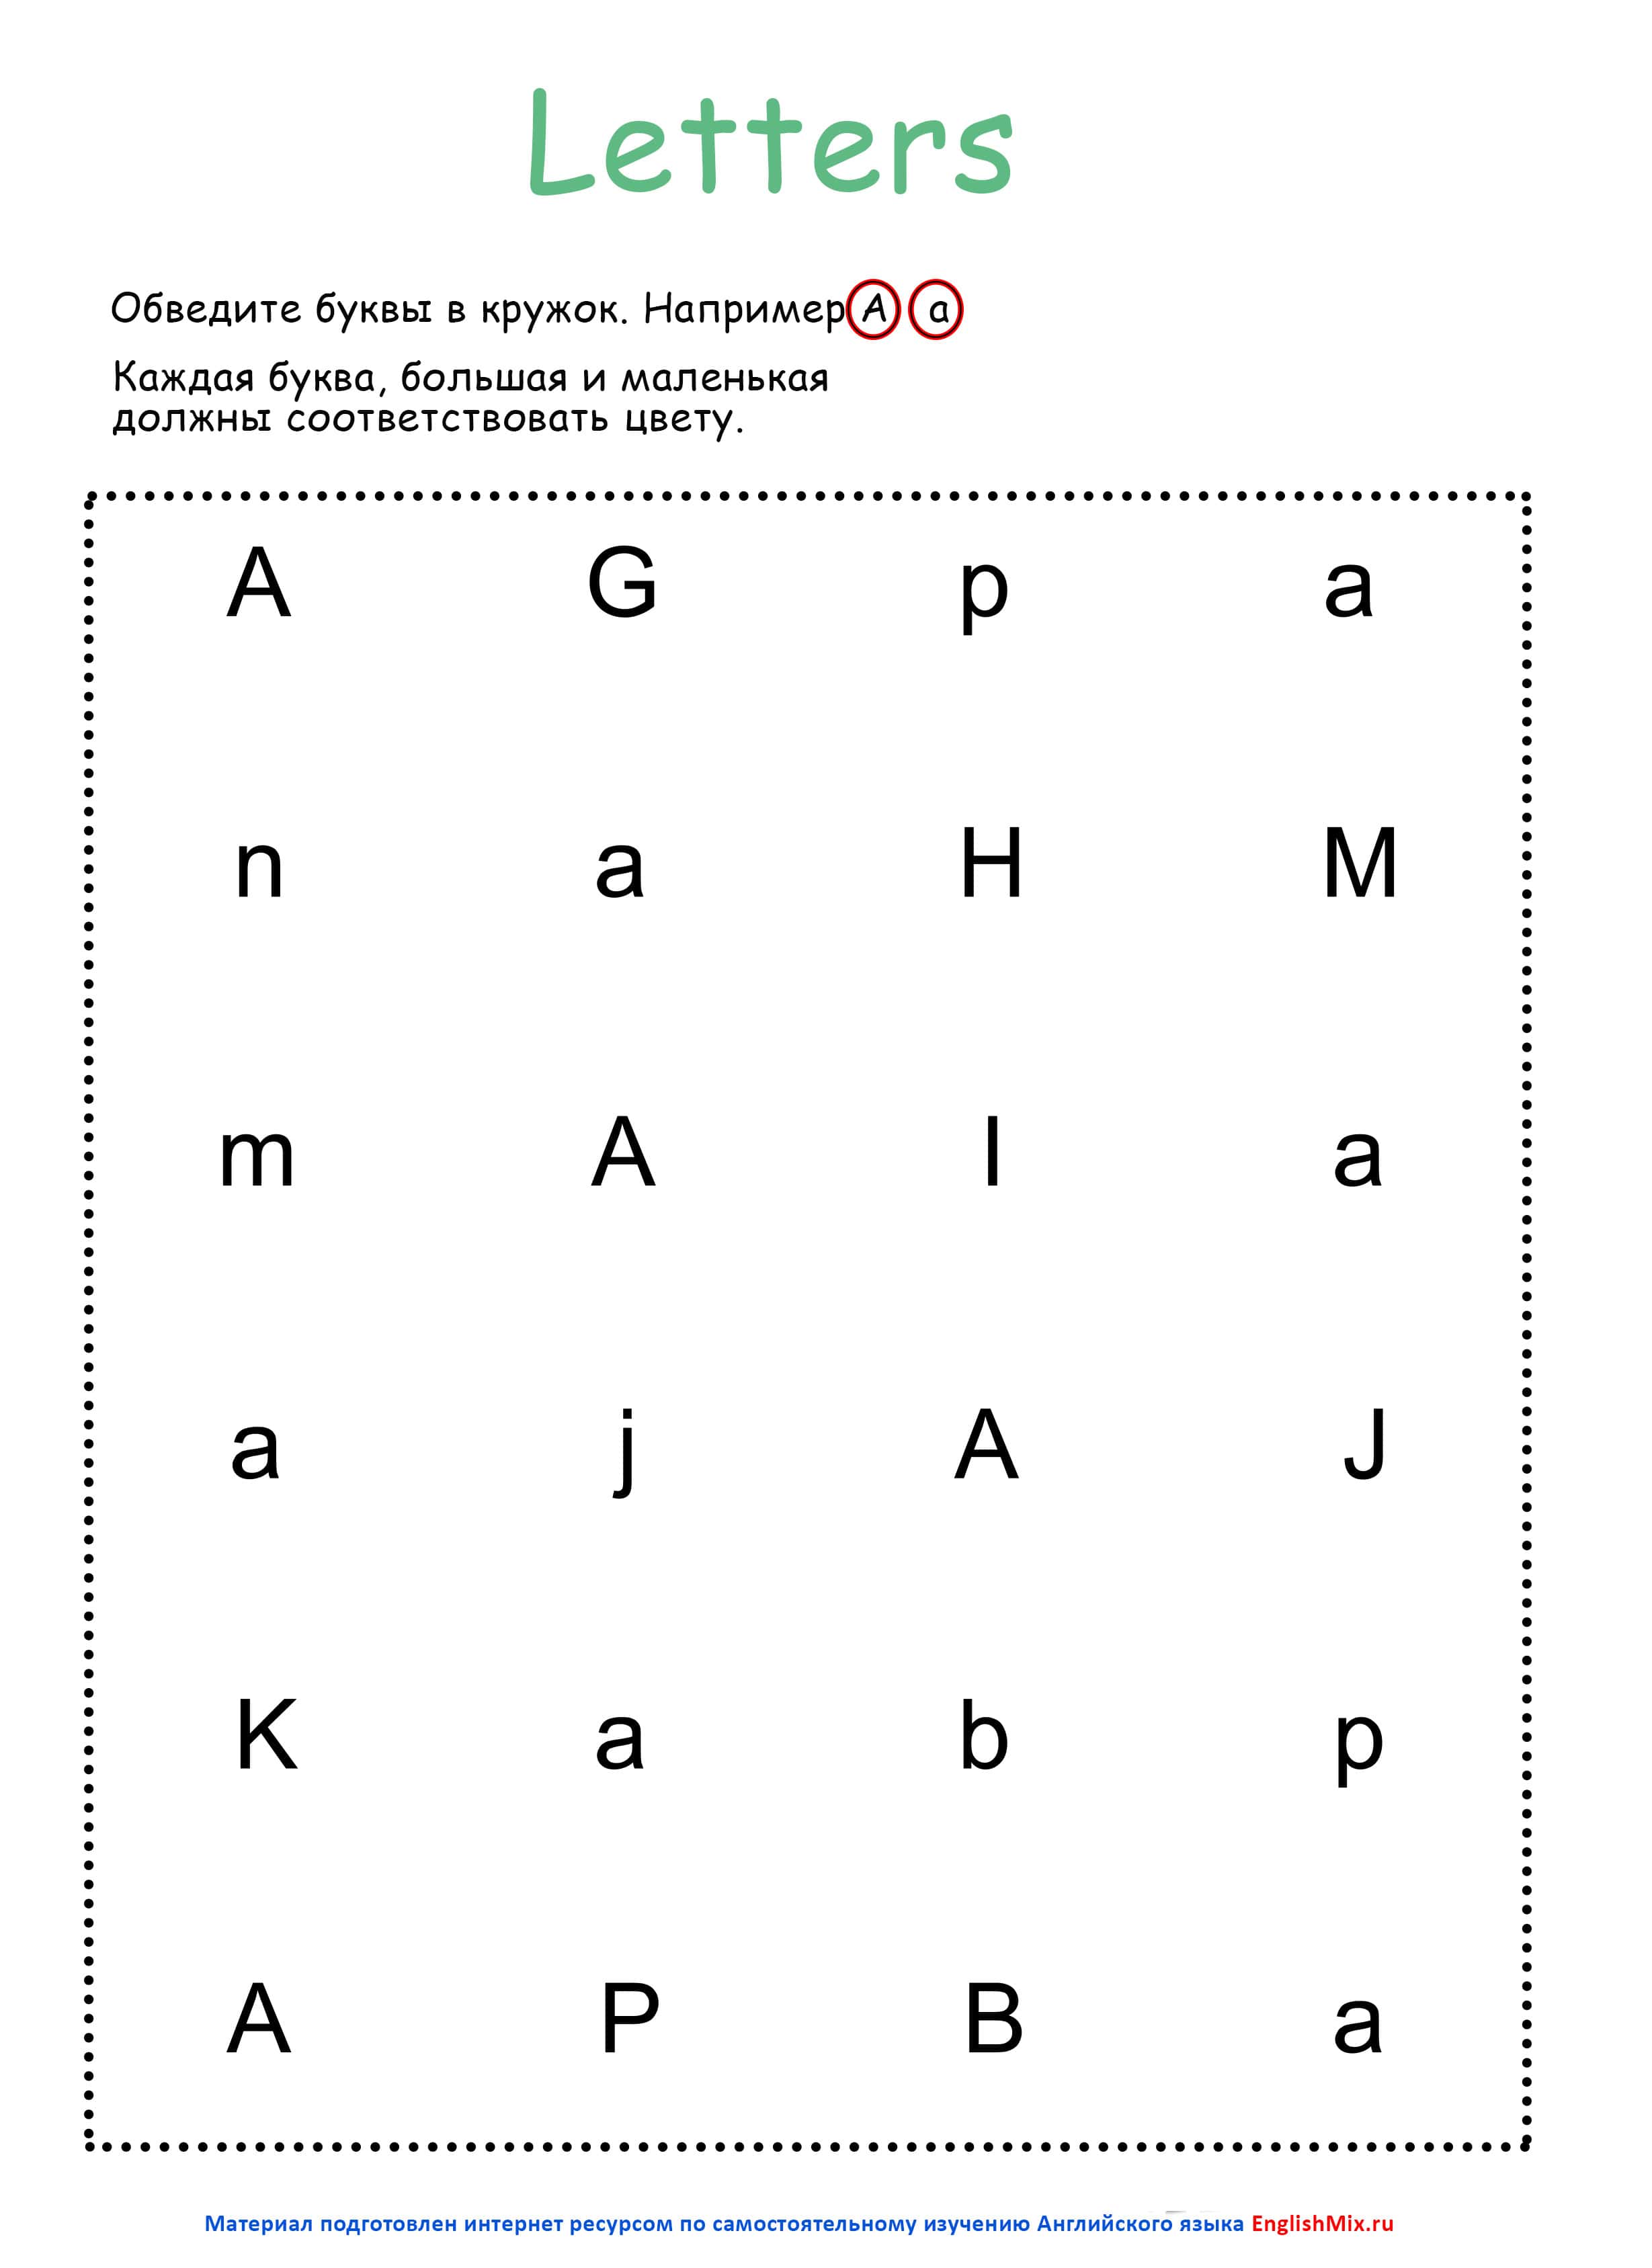 Учим буквы: как научить ребенка алфавиту на домашних занятиях